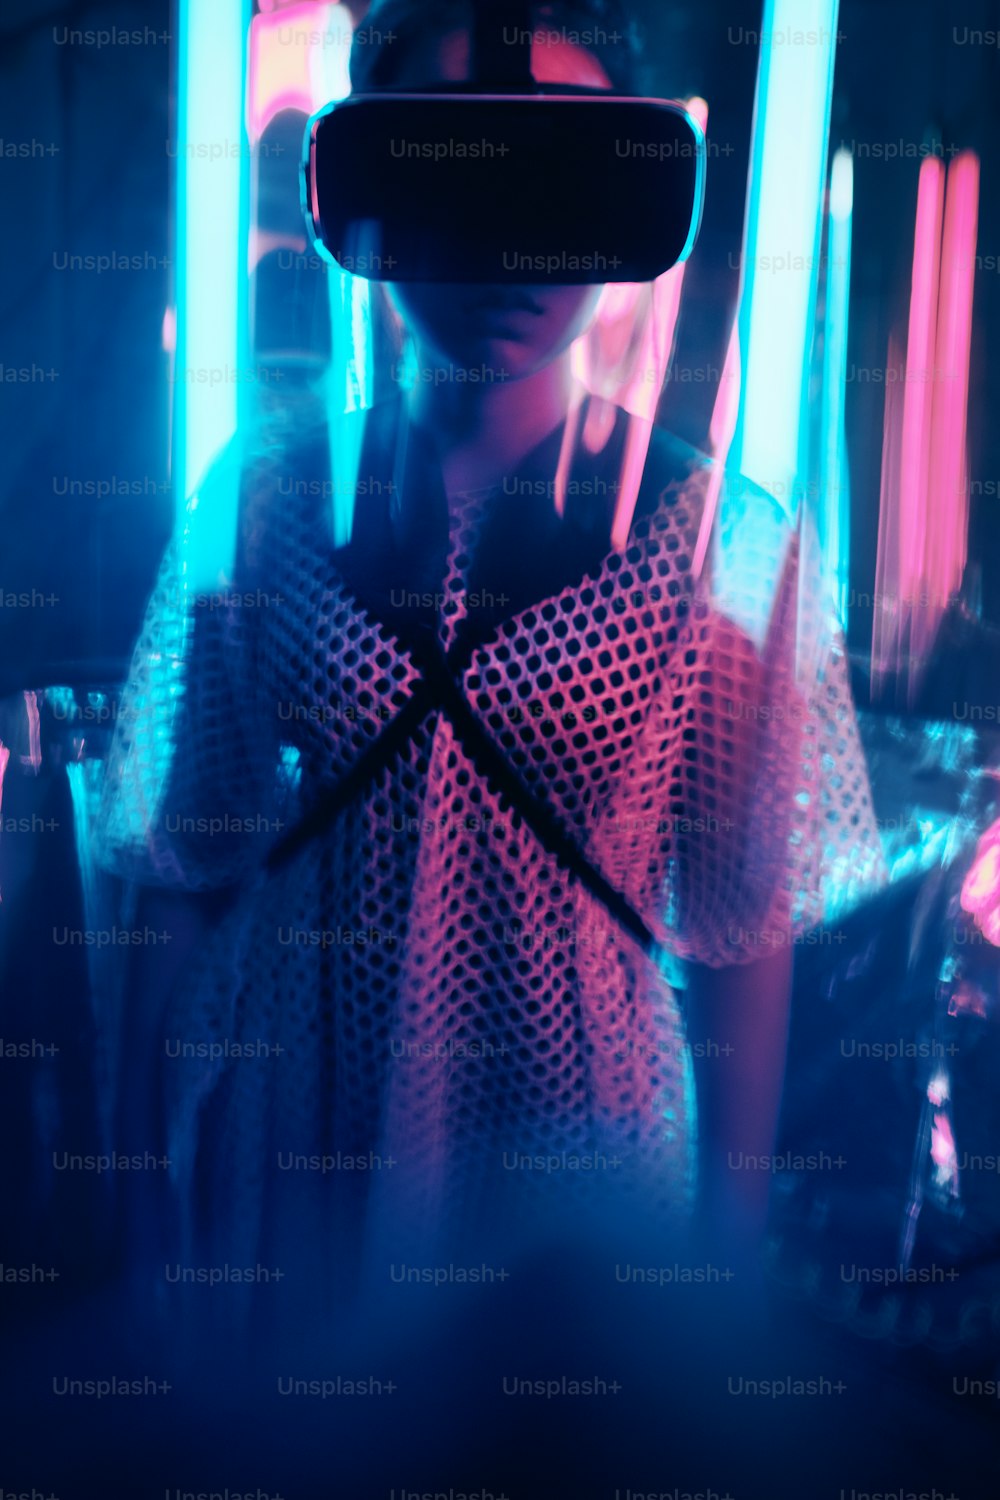 バーチャルリアリティゴーグルを装着した若い女の子のポートレート。彼女はネオンライトに囲まれています。バーチャルリアリティの視点コンセプト